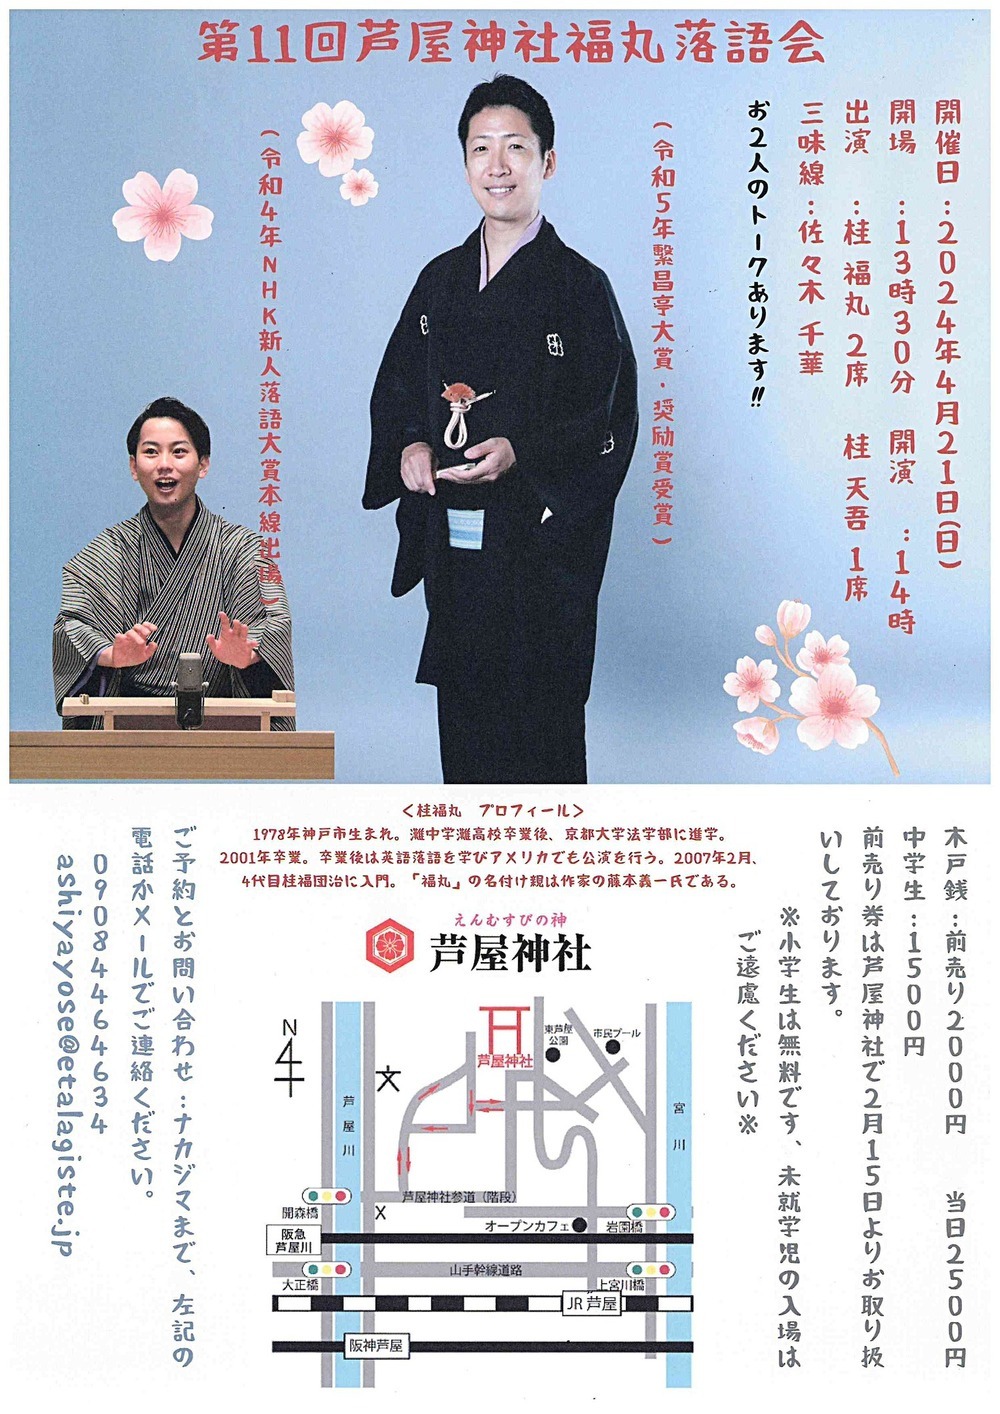 11º Show do Santuário Ashiya Fukumaru Rakugo